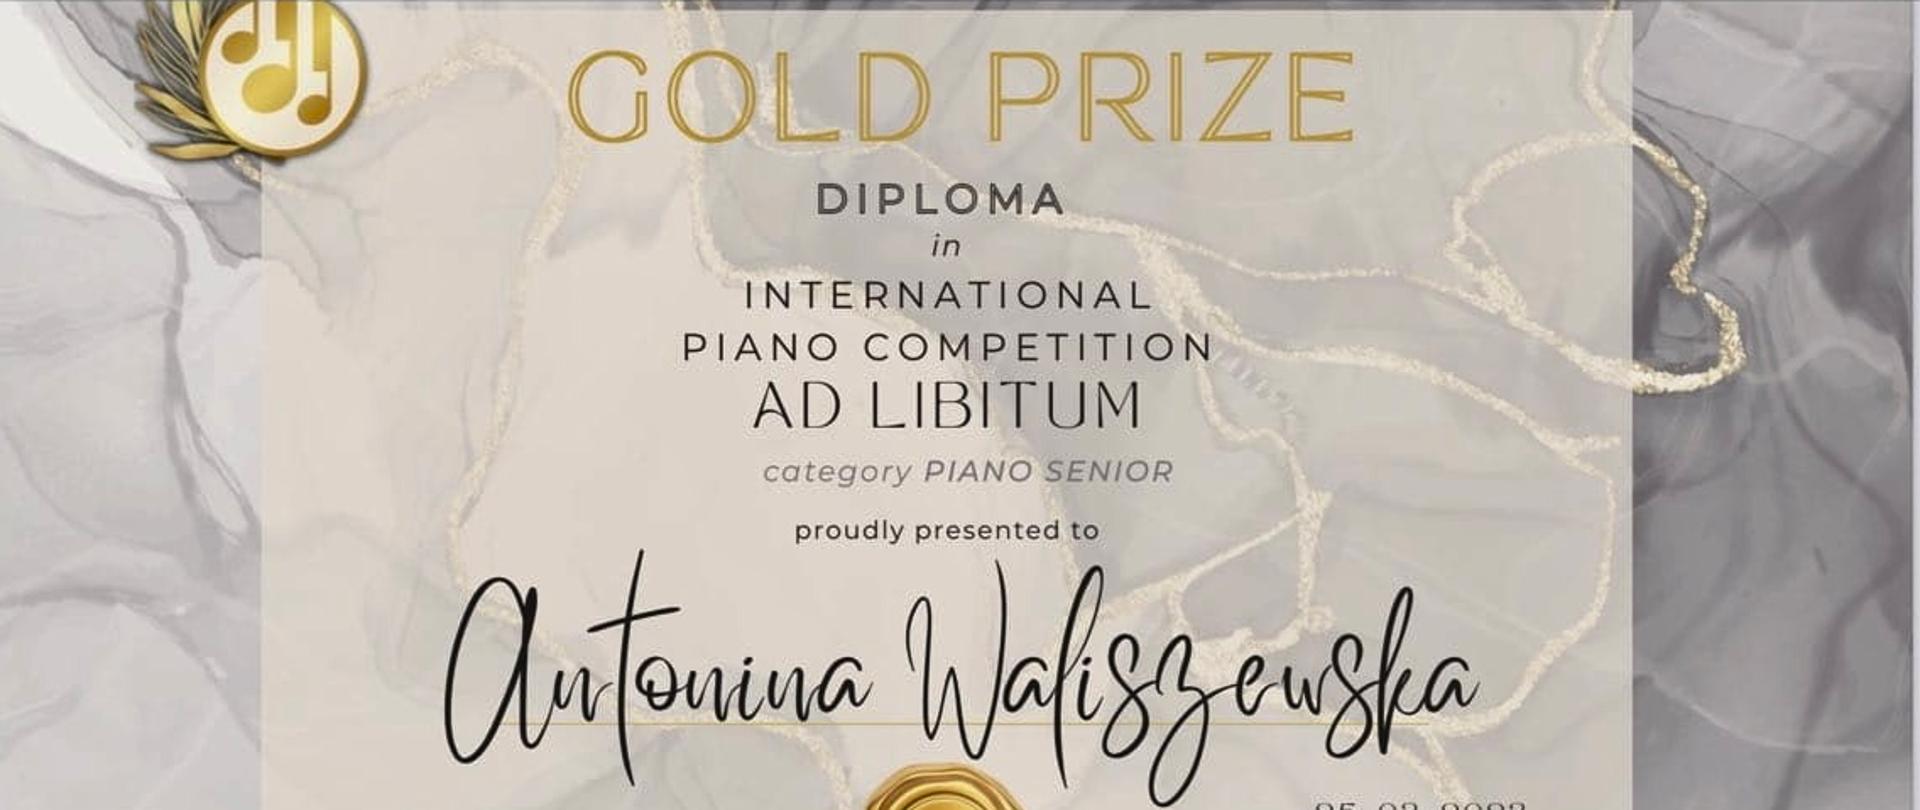 Dyplom International Piano Competition Ad Libitum 25 marca 2023 r. dla Antoniny Waliszewskiej w kolorze beżowym z napisem gold prize.